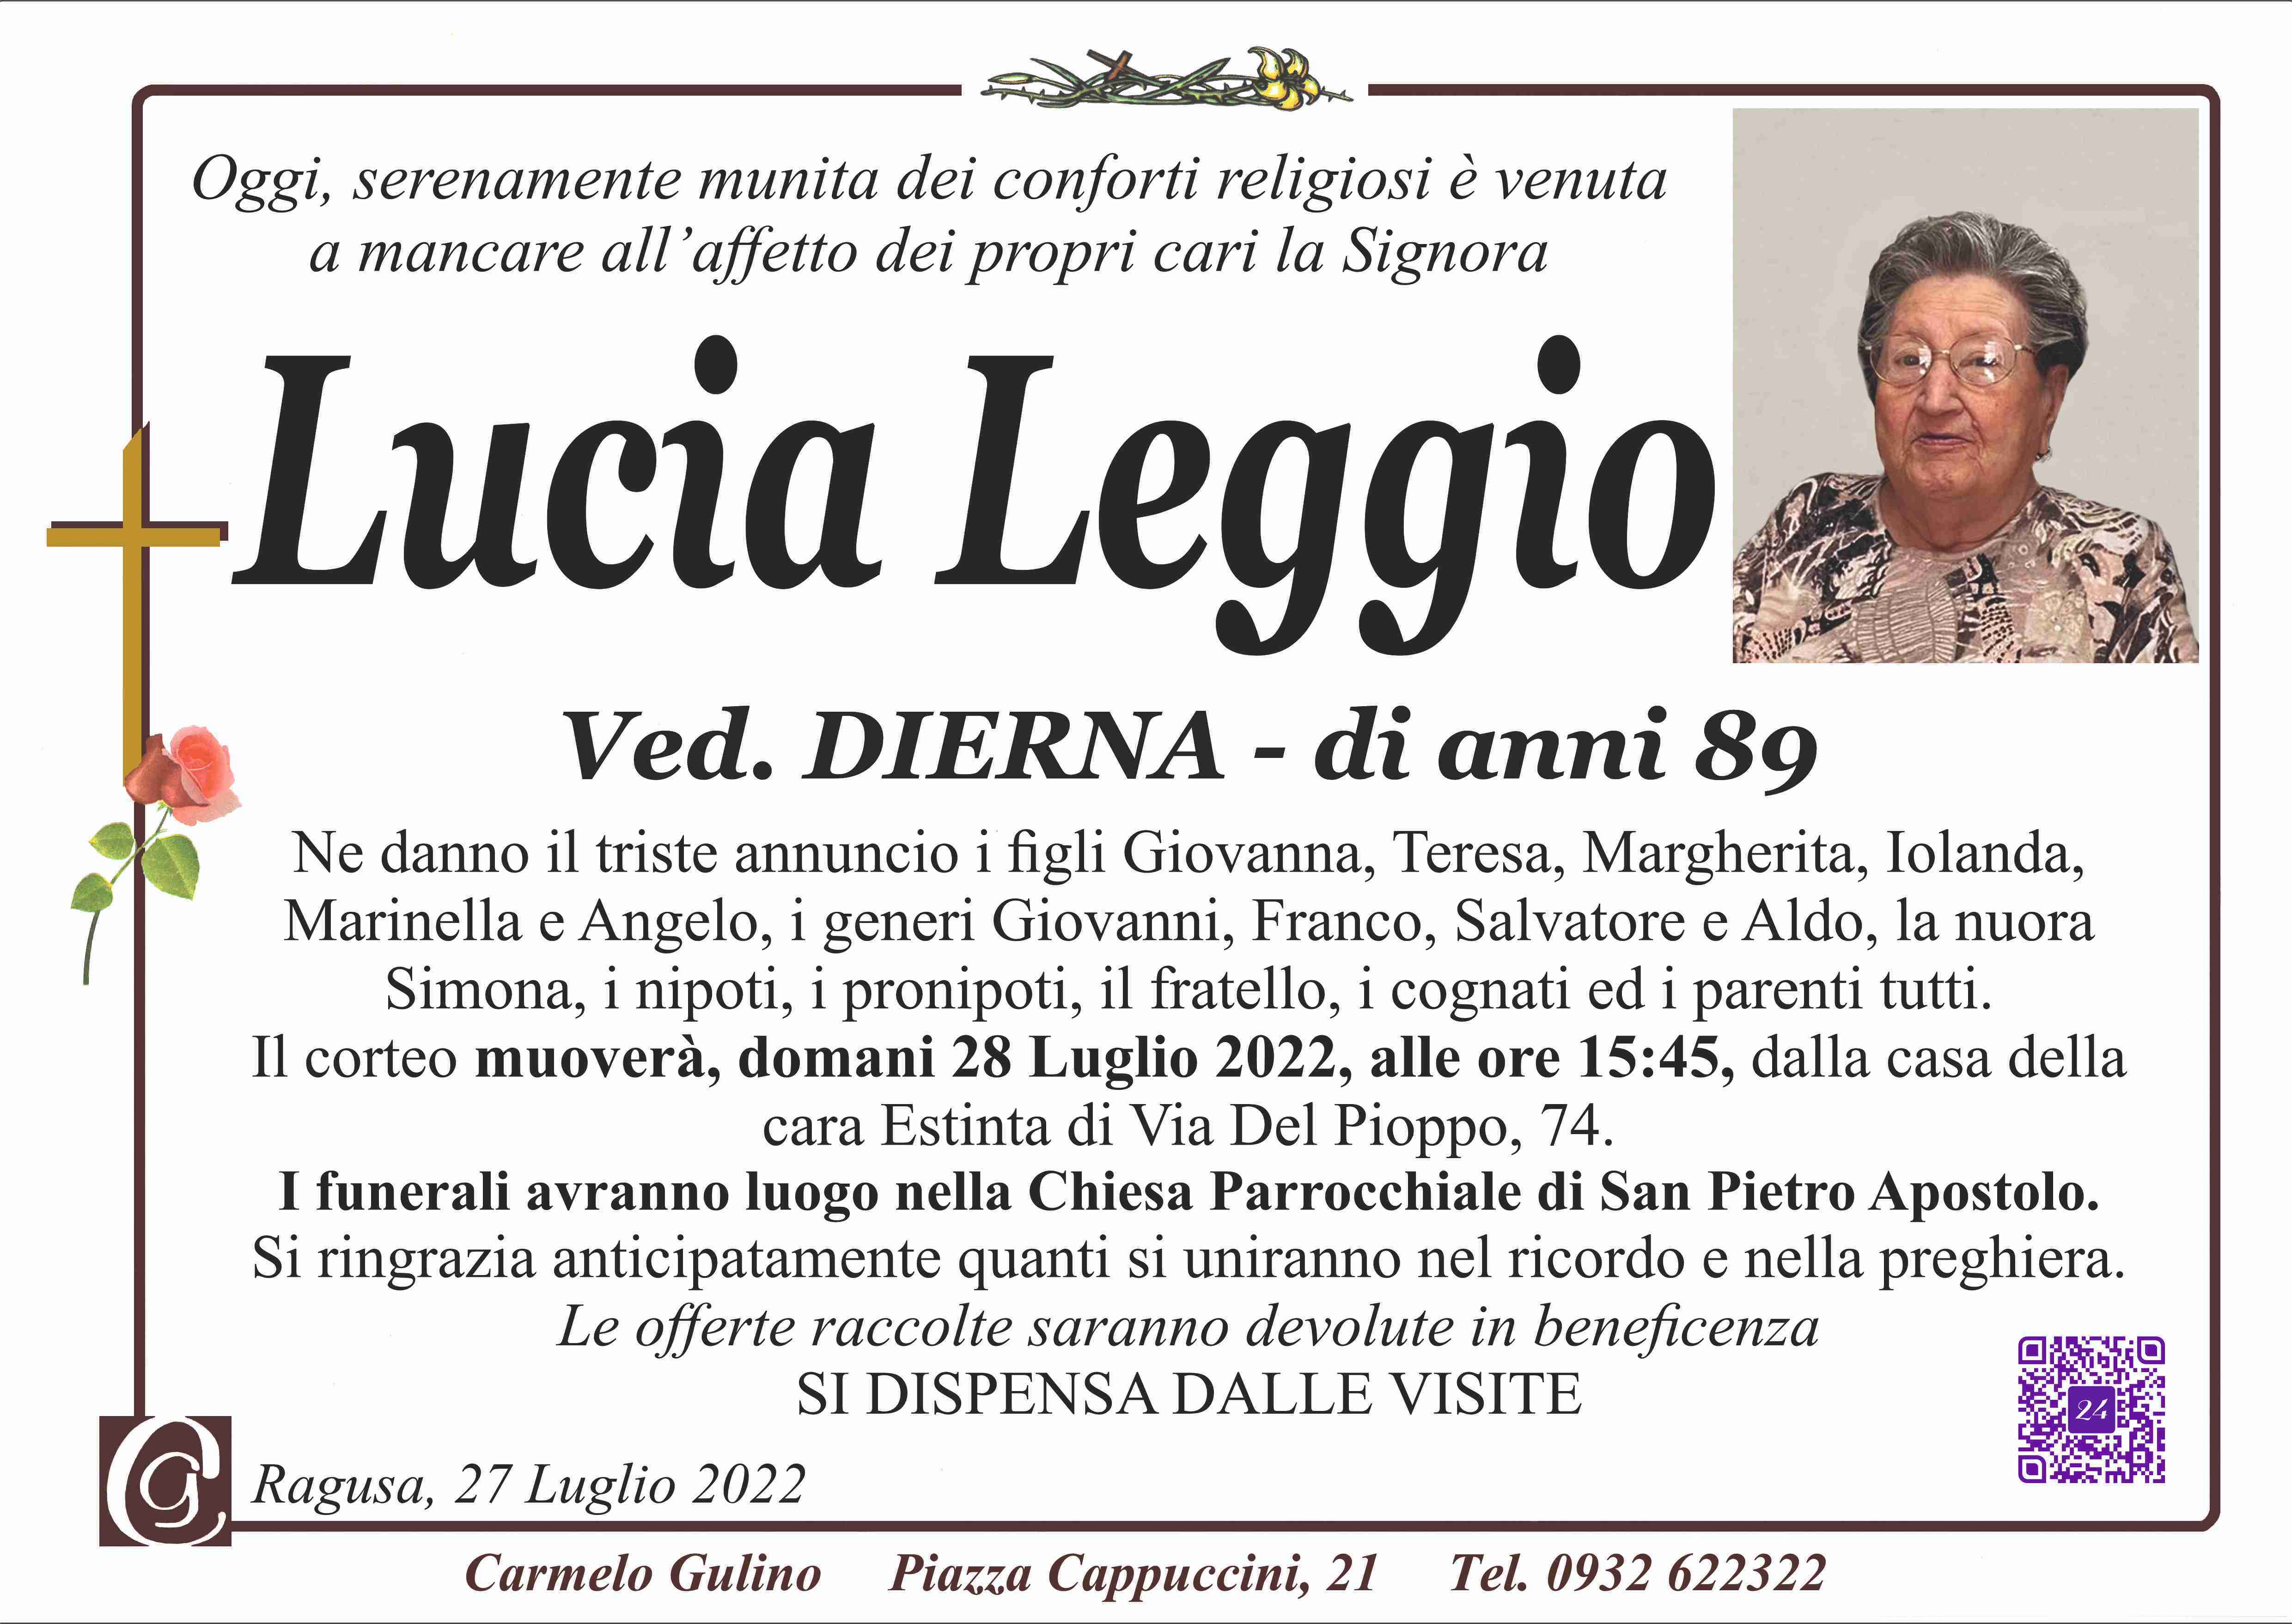 Lucia Leggio